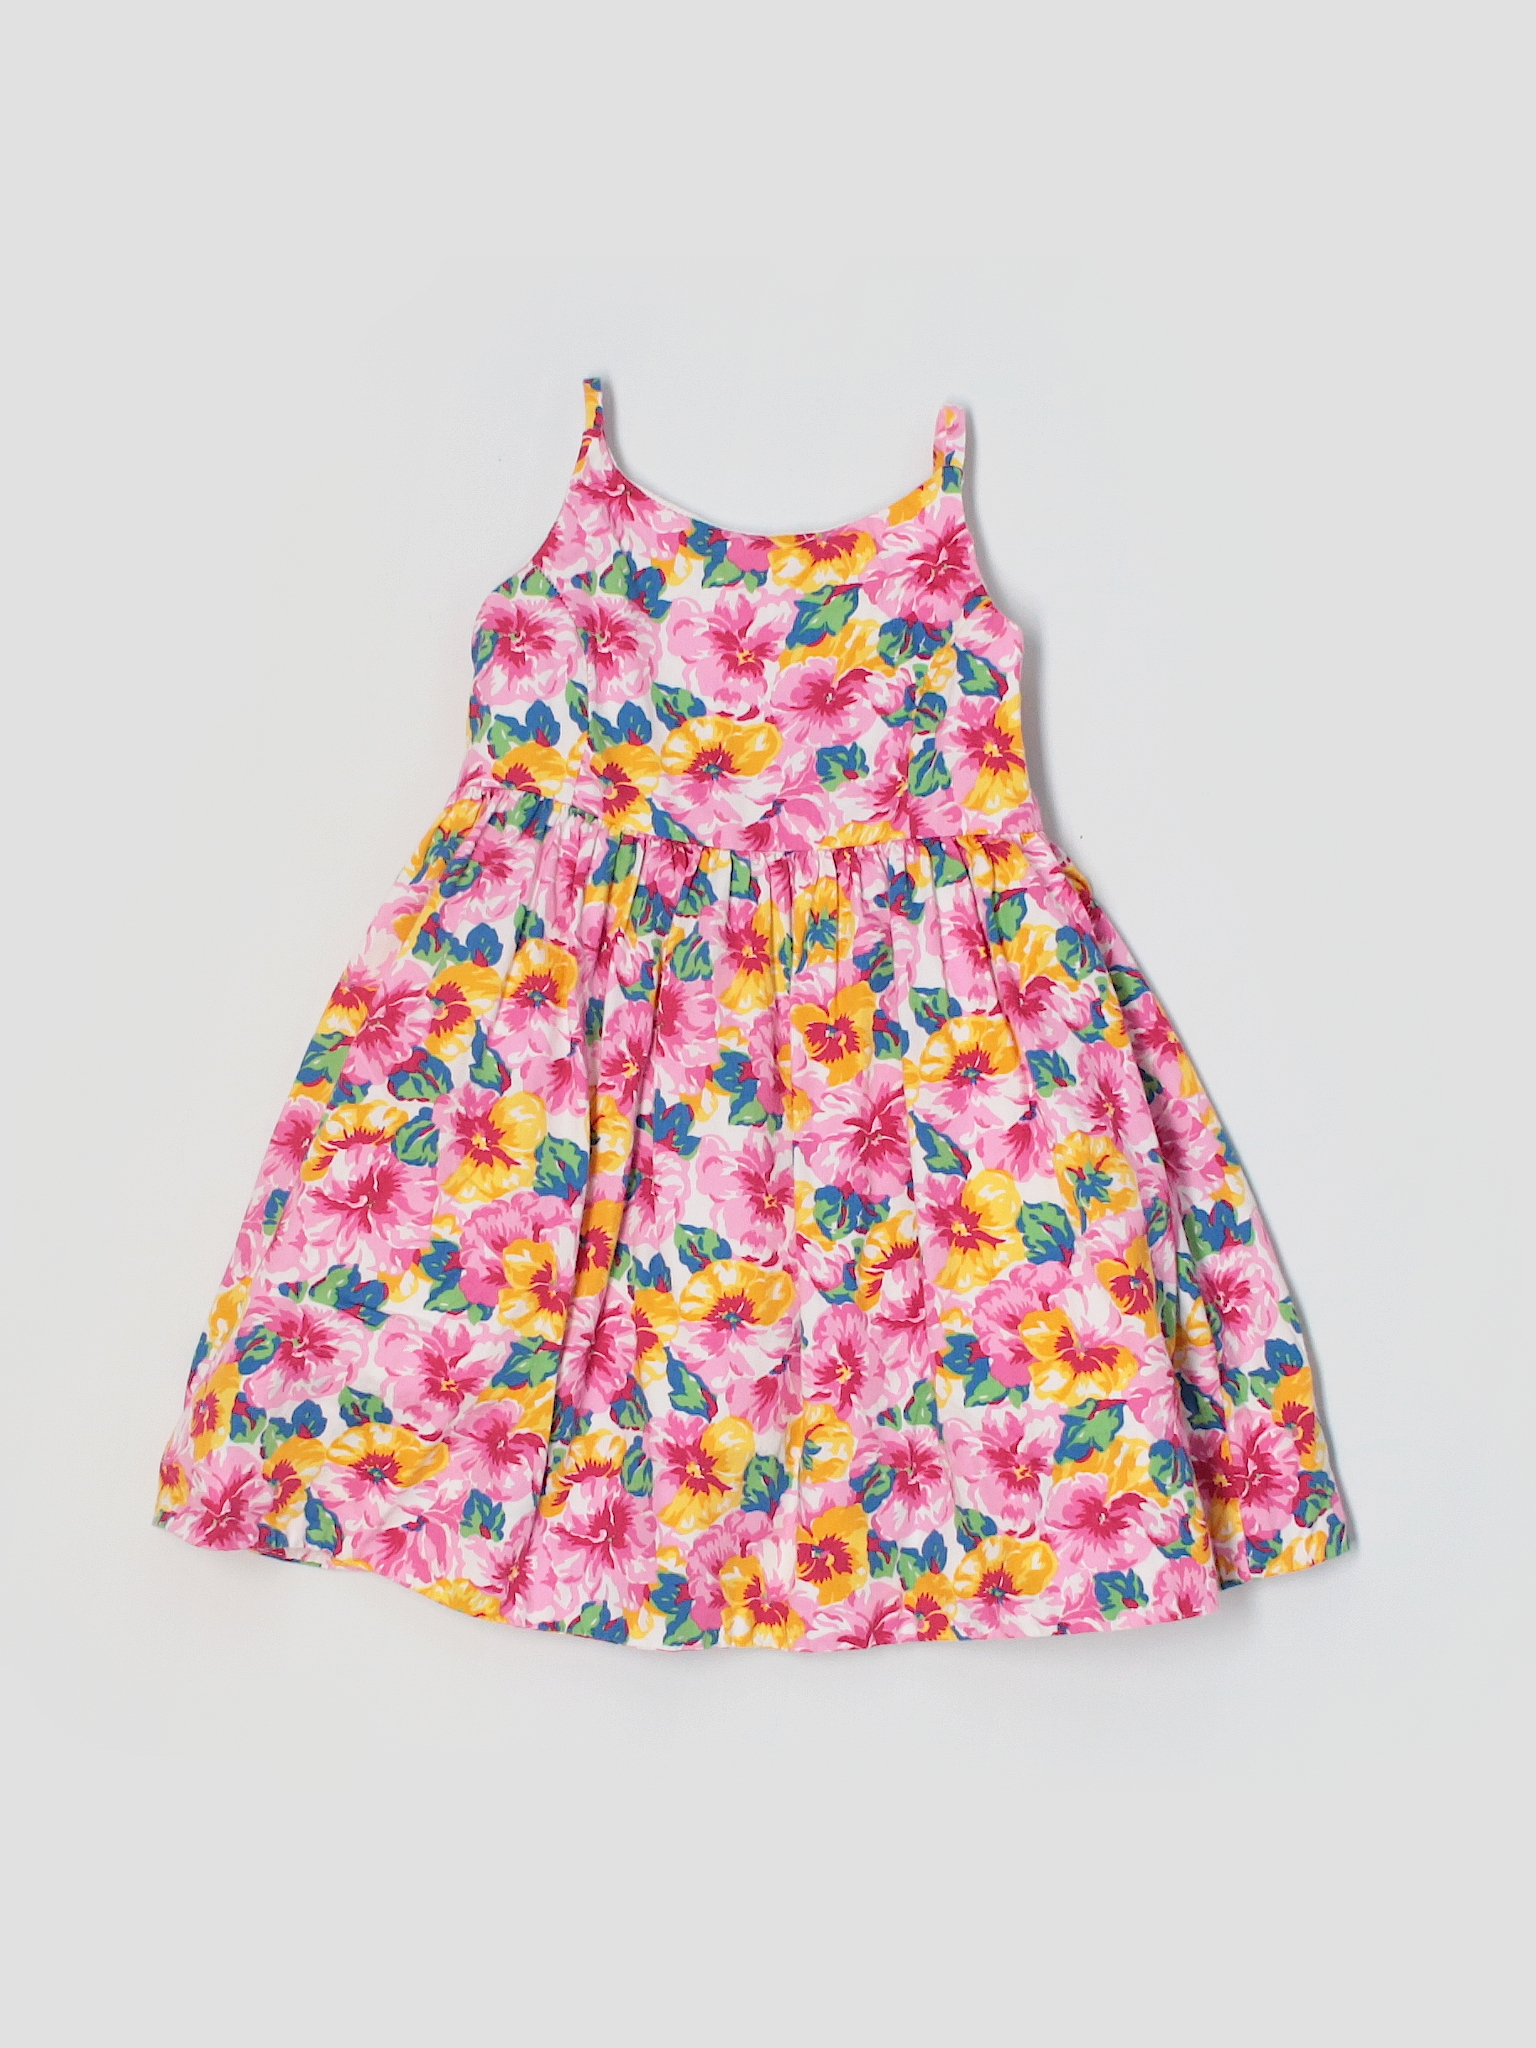 Ralph Lauren 100% Cotton Floral Pink Dress Size 2 - 86% off | thredUP